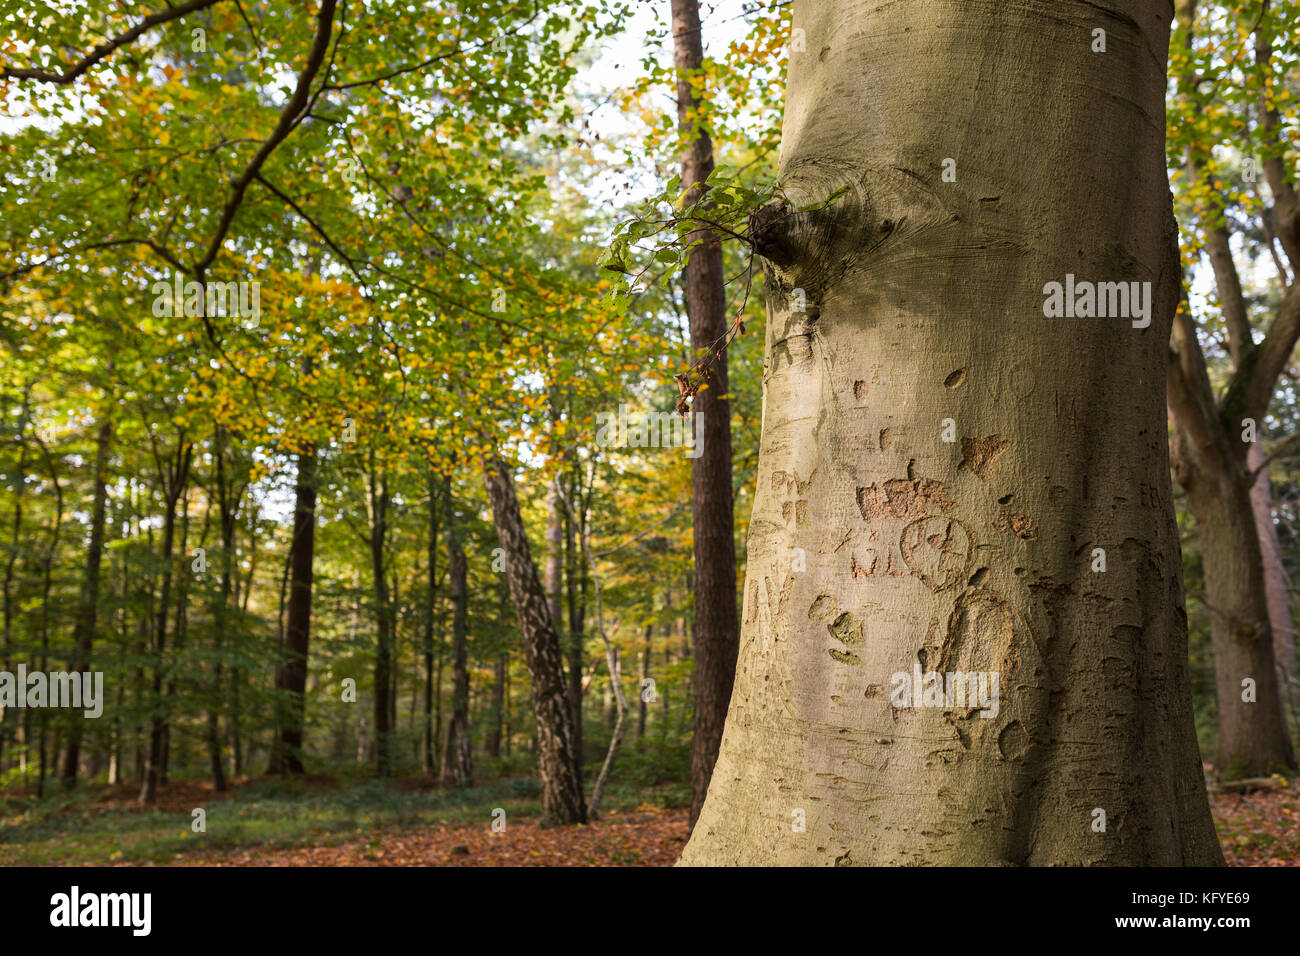 Beech tree avec des lettres et initiales gravées dans l'écorce, Allemagne Banque D'Images